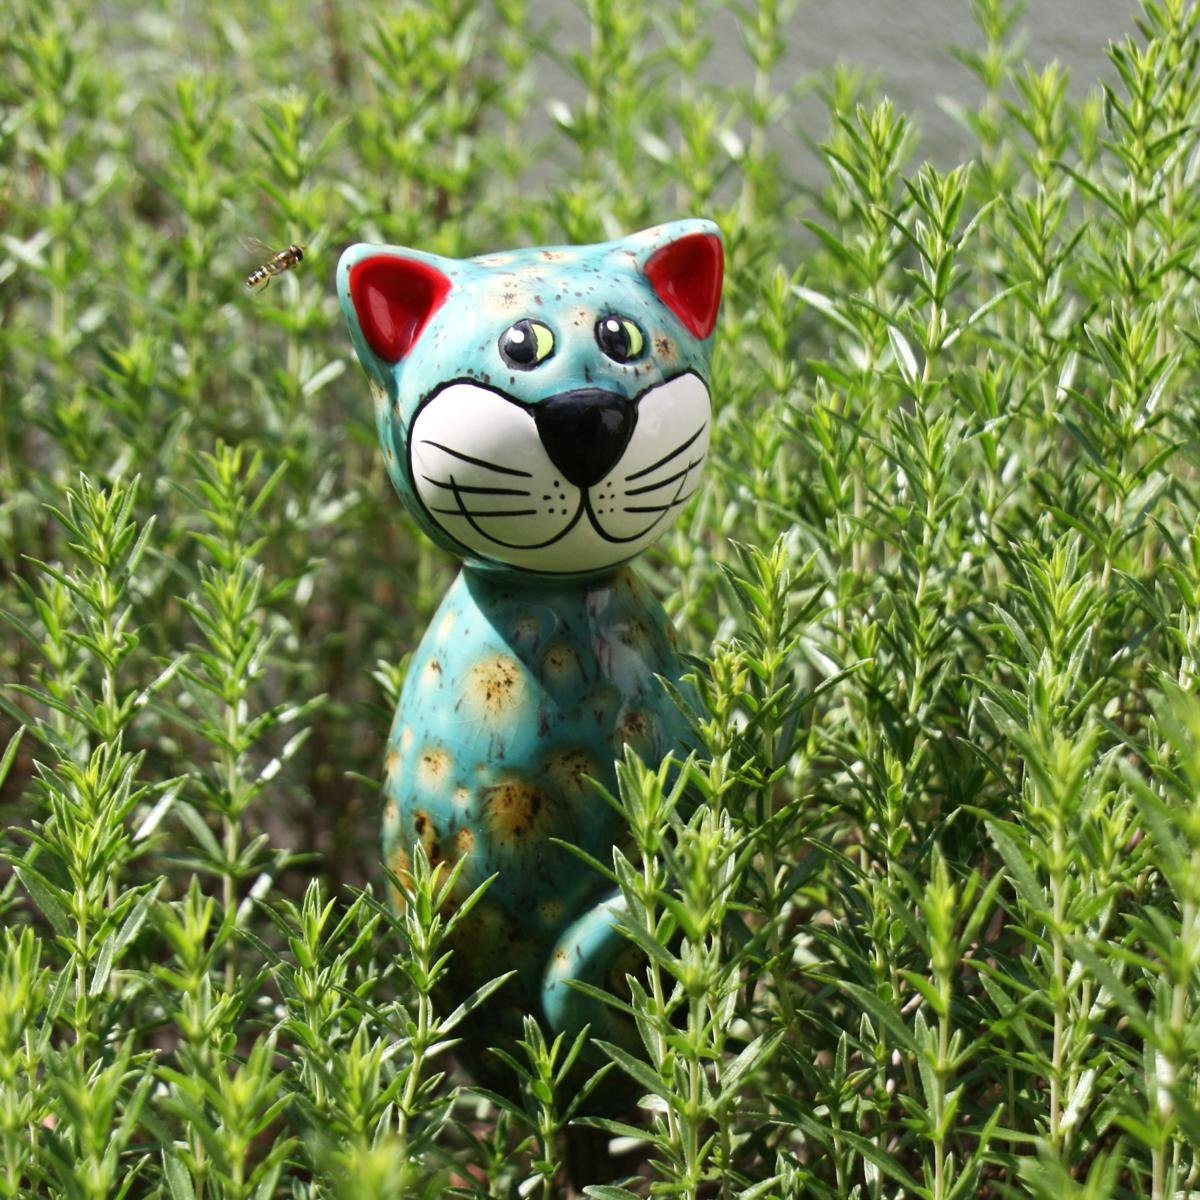 blaugrün mit olivfarbenen Akzenten, MINI Tangoo Keramik-Katze Gartenfigur Tangoo (Stück)